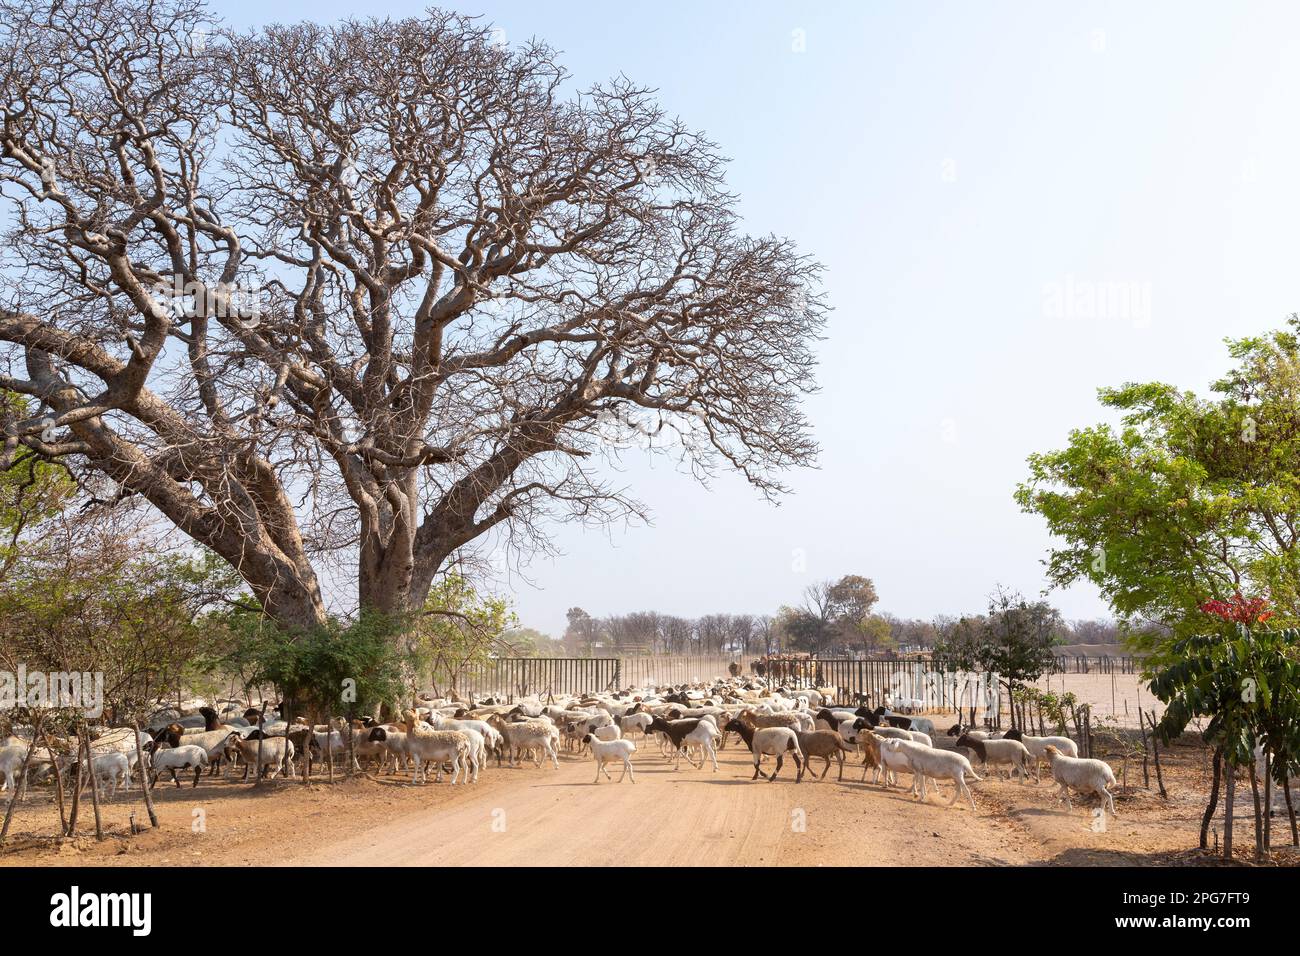 Gran rebaño de ovejas y ganado que se rebaño para ir a pastorear en una granja de ganado del norte de Botswana Foto de stock